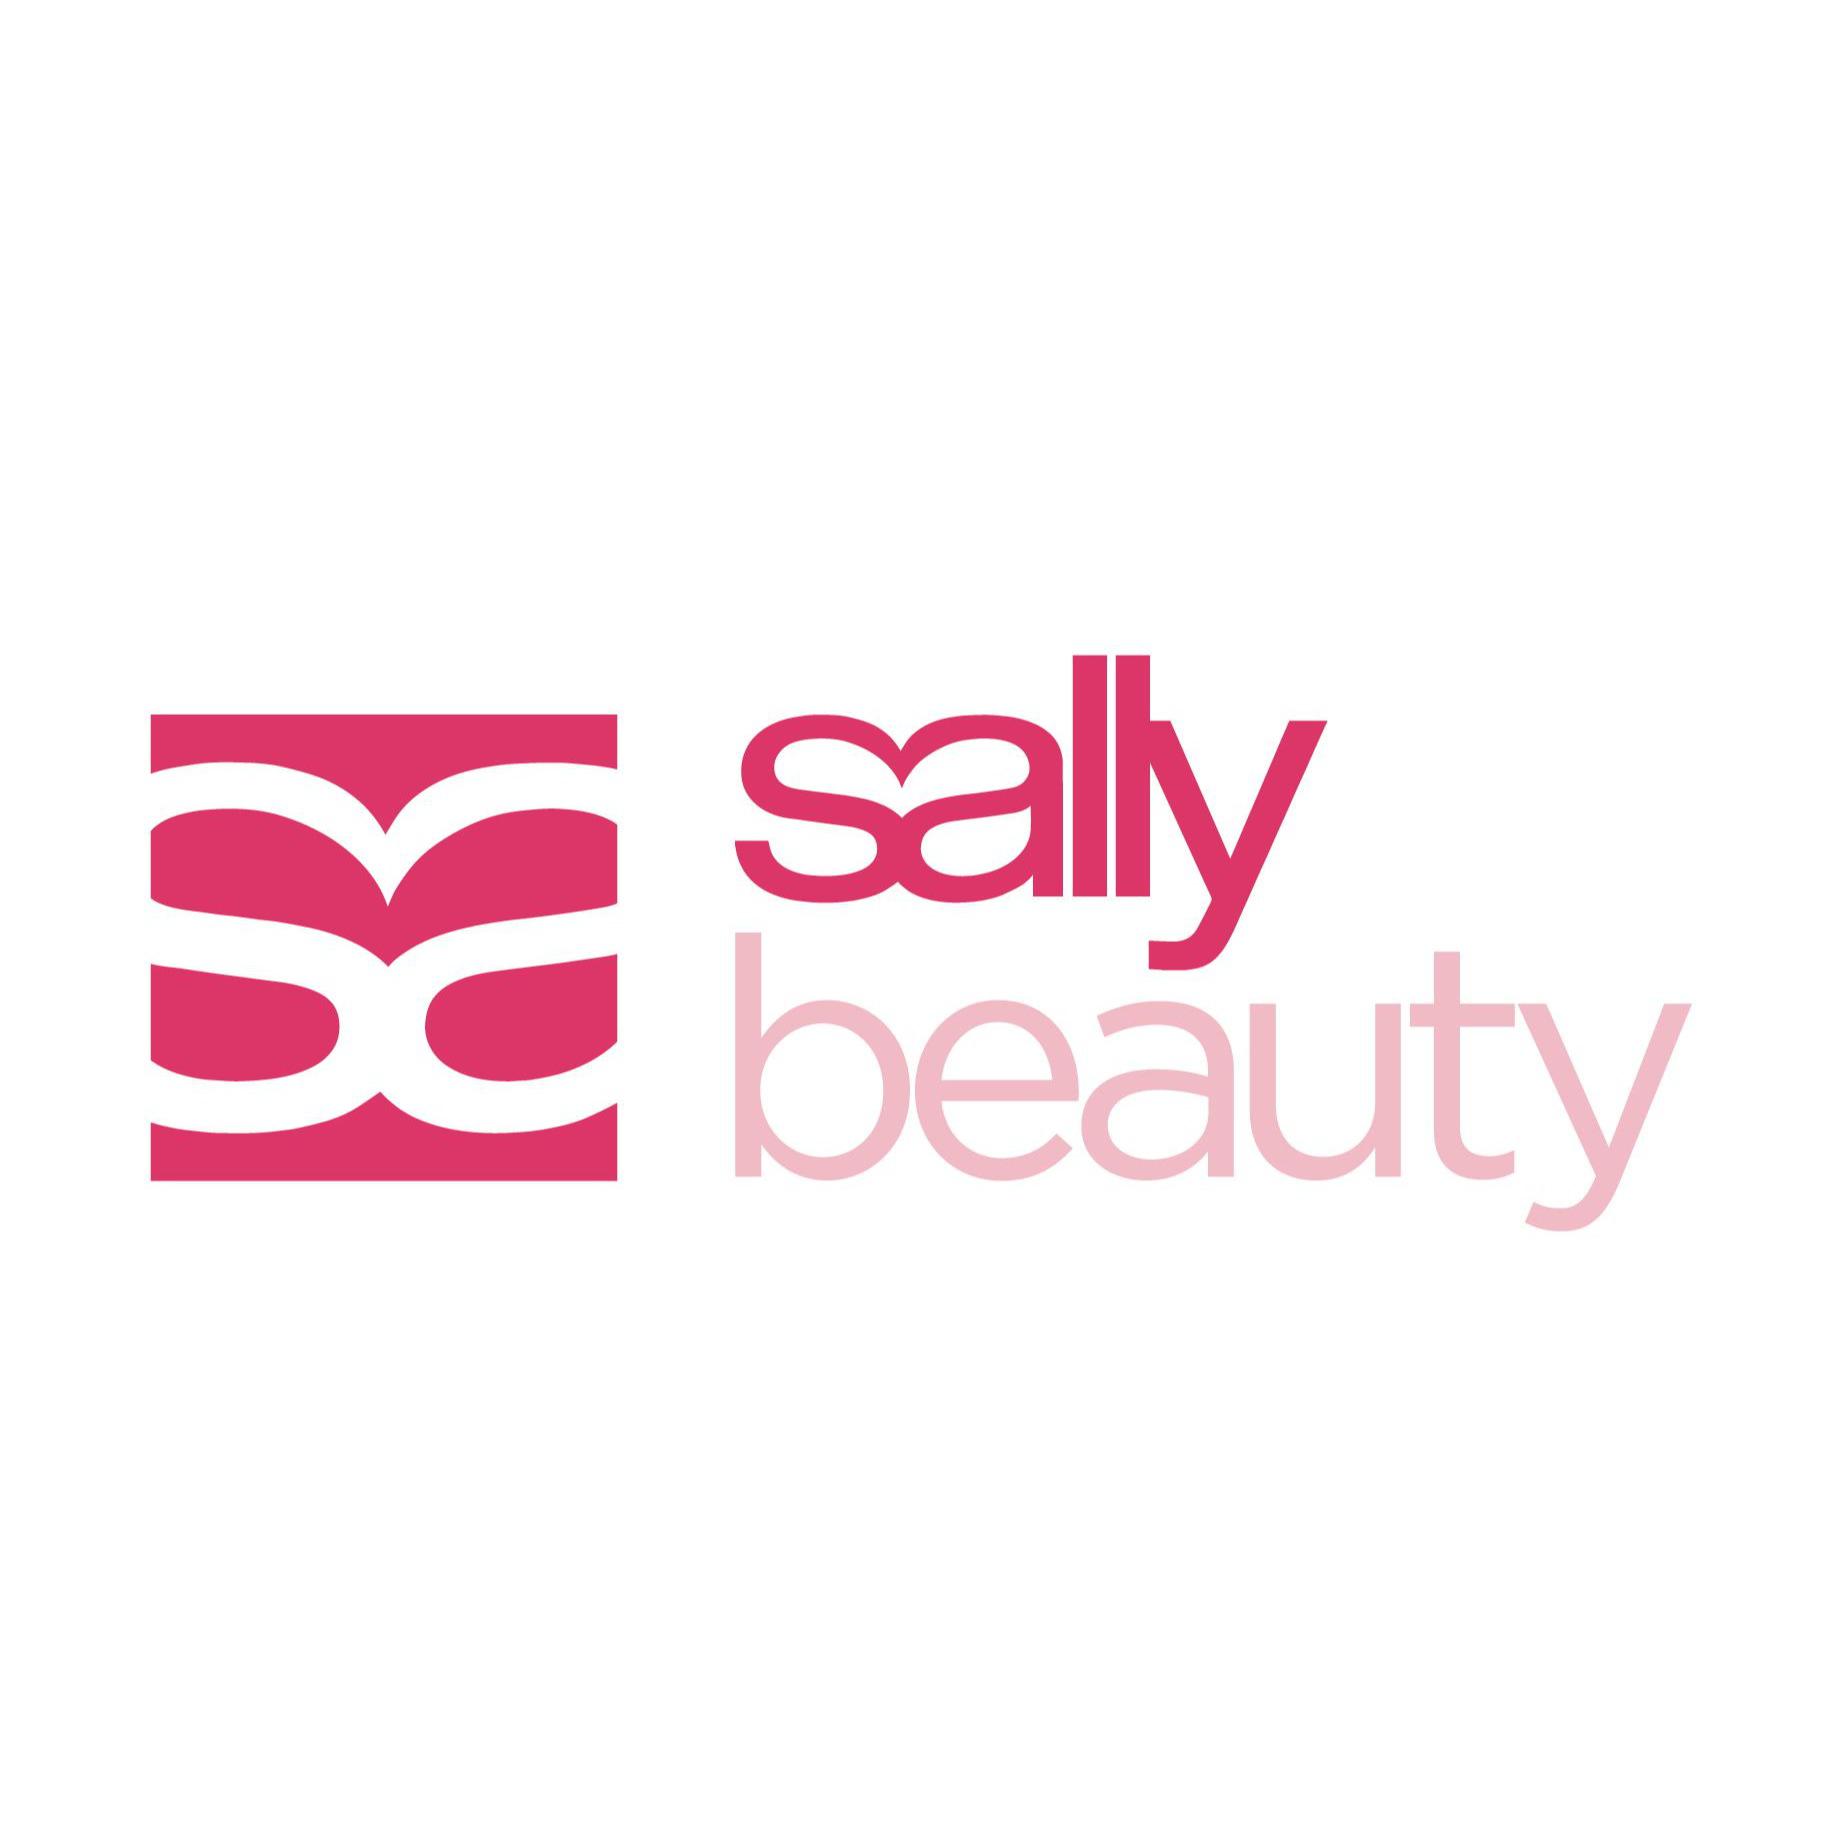 Sally Beauty Morecambe 01524 843371